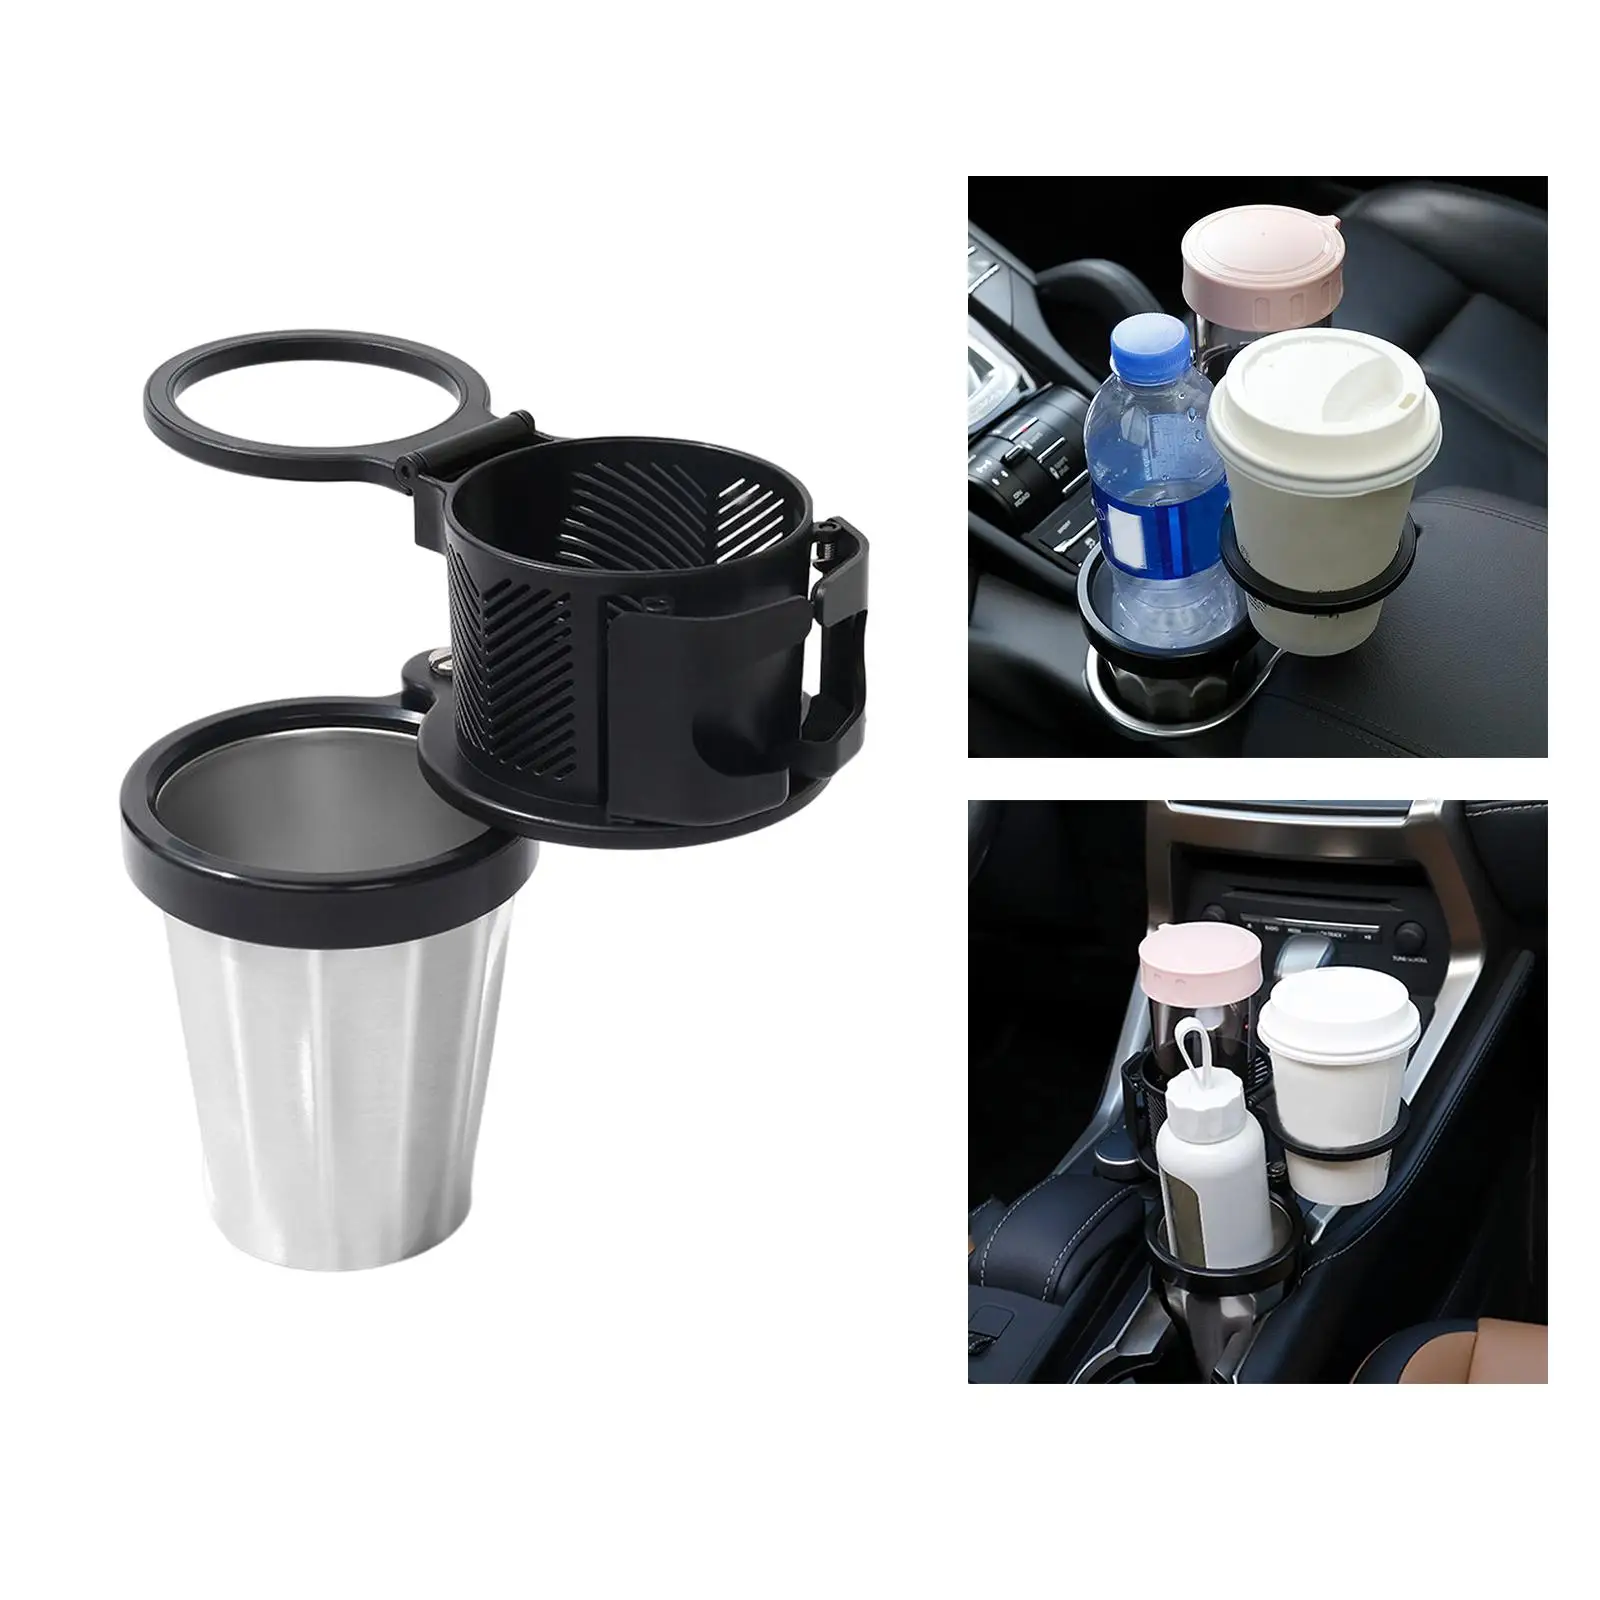 Adjustable Car Cup Holder Rotating Base Black Drink Storing Bottle Multifunctional Universal Detachable Cup Holder for Car